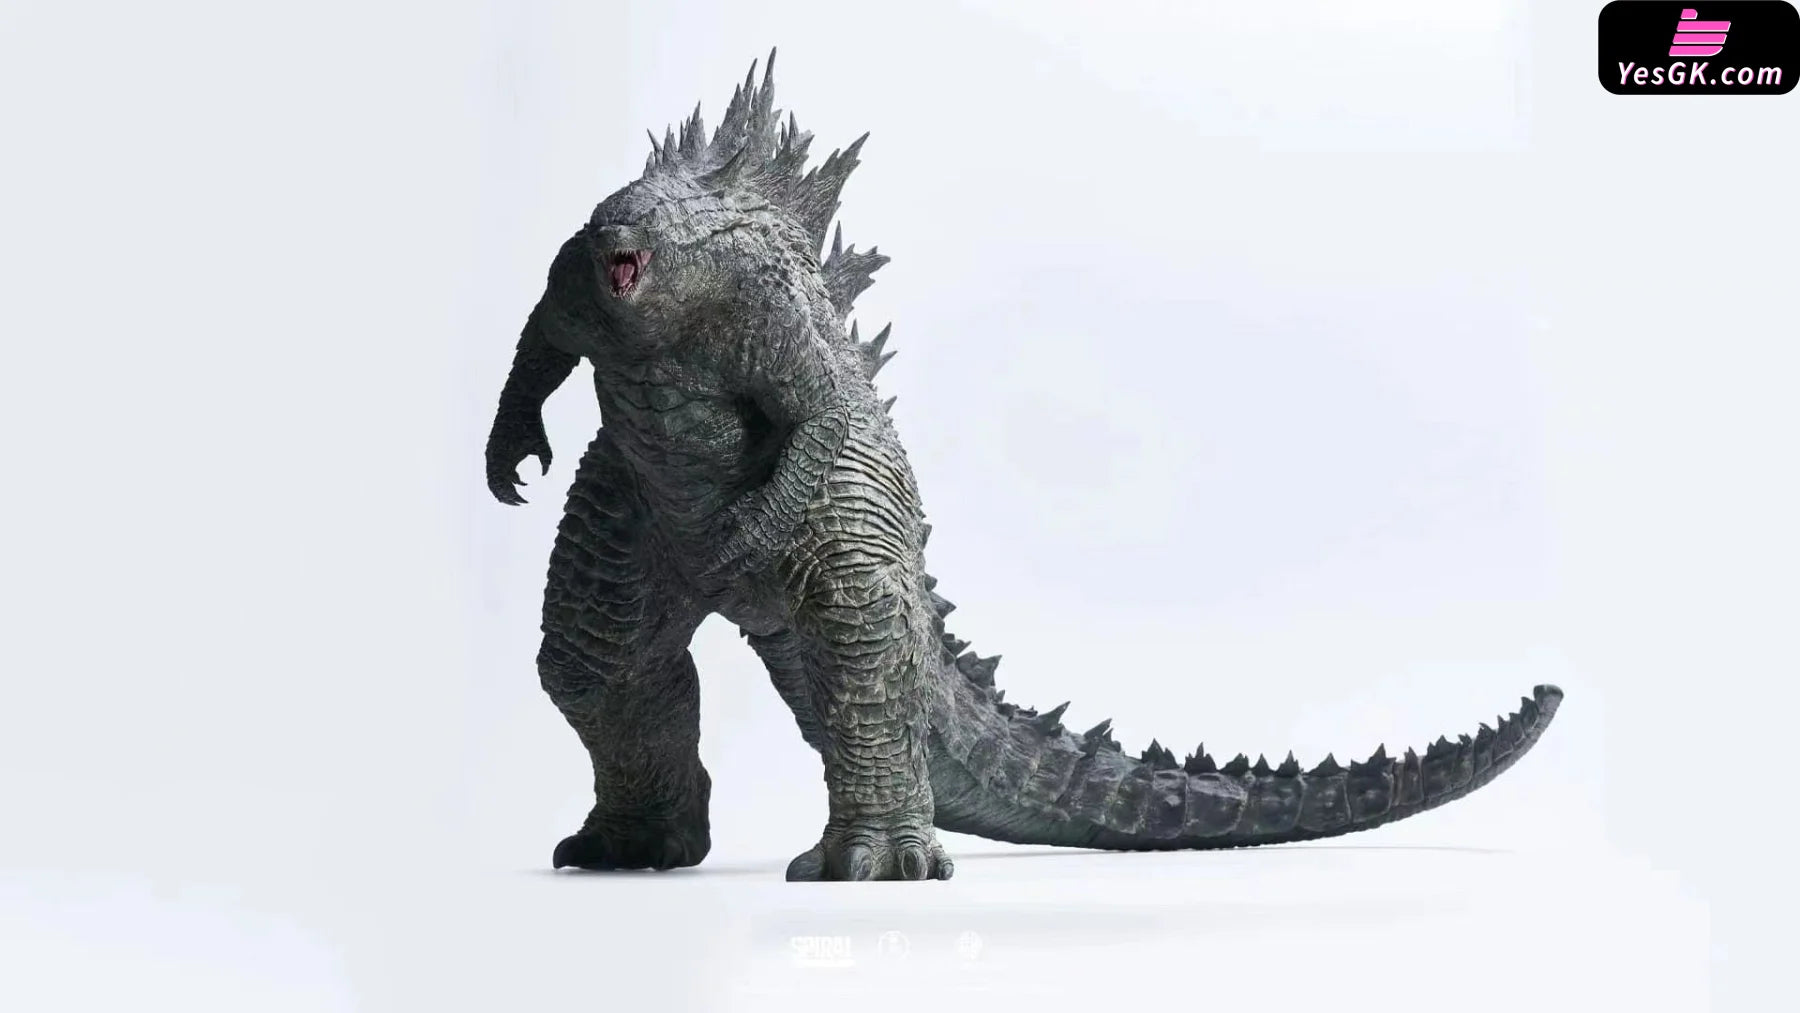 Godzilla 2019 Statue - Spiral Studio [Pre-Order]